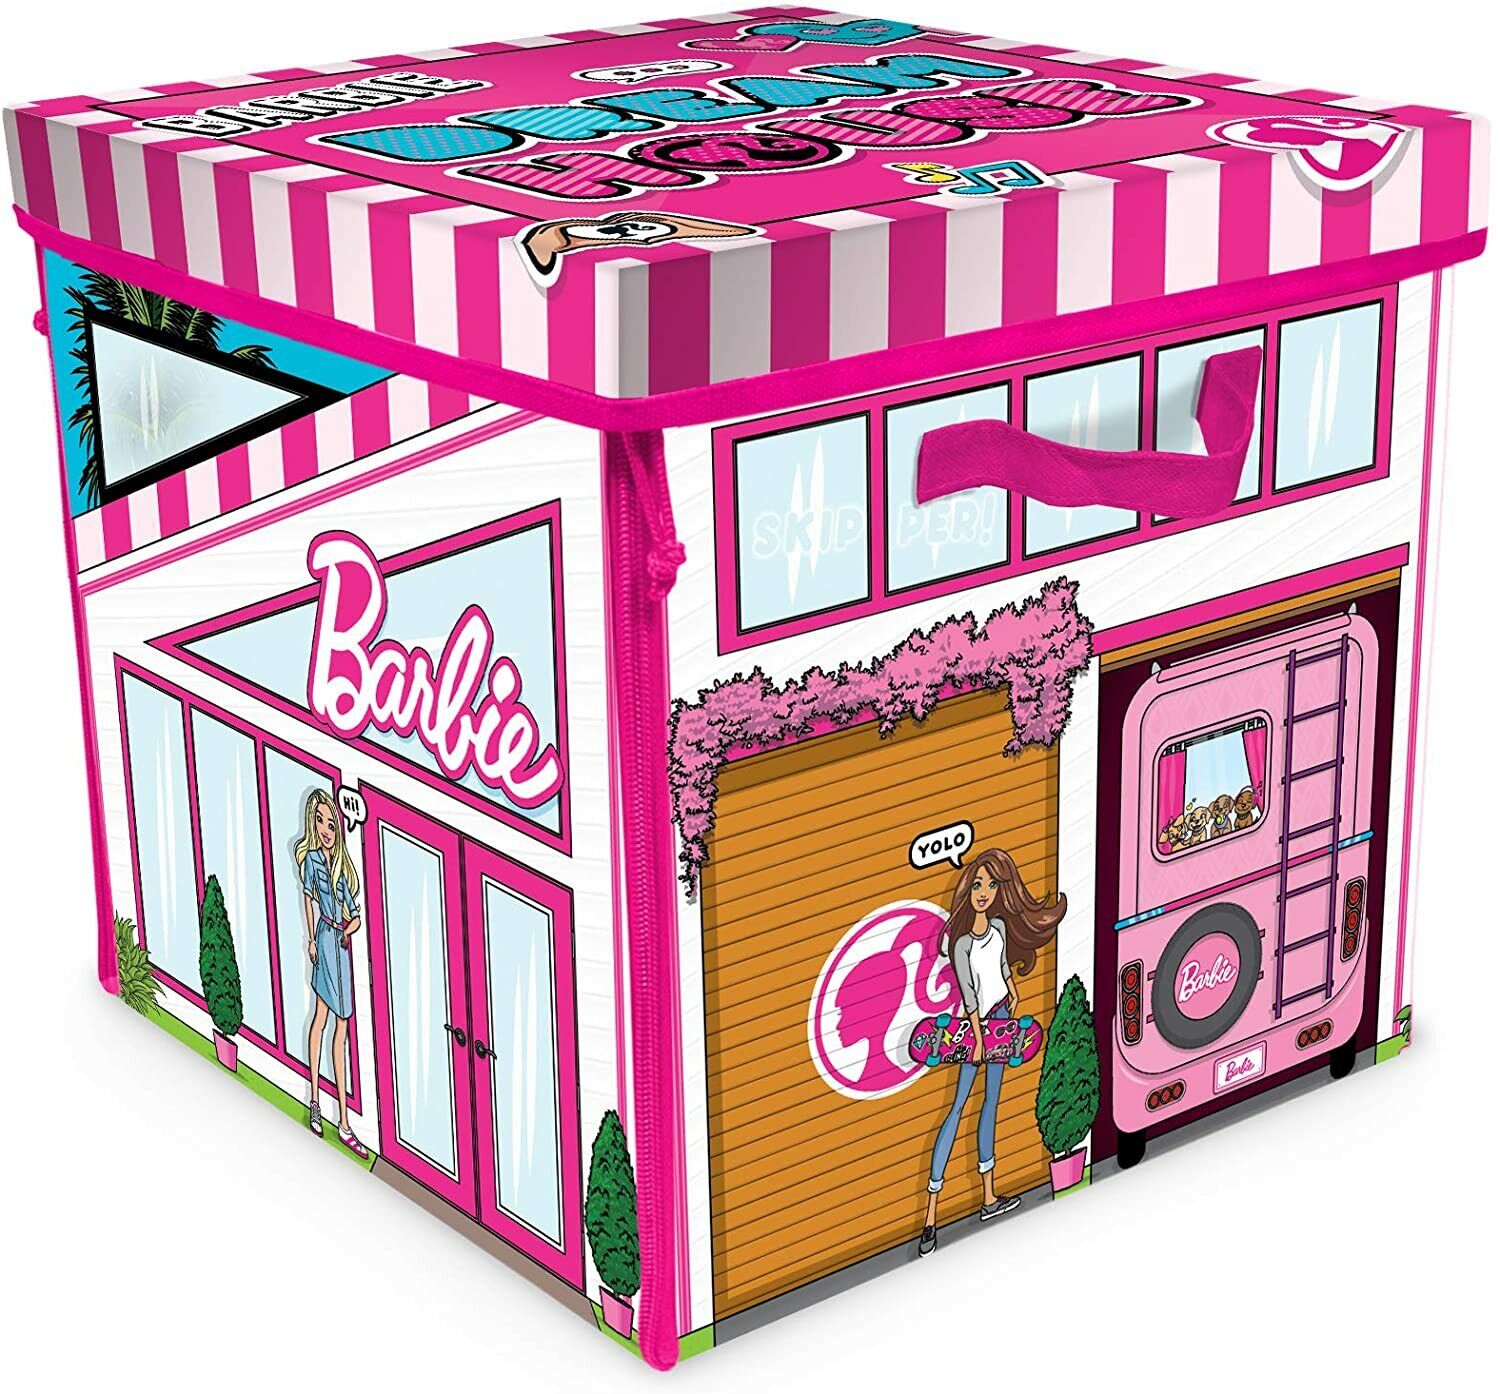 Polinizar negro A rayas Muñeca Barbie Zipbin Juego Casa De Ensueño Almacenamiento Caja descomprima  decoradas habitaciones Colorido | eBay